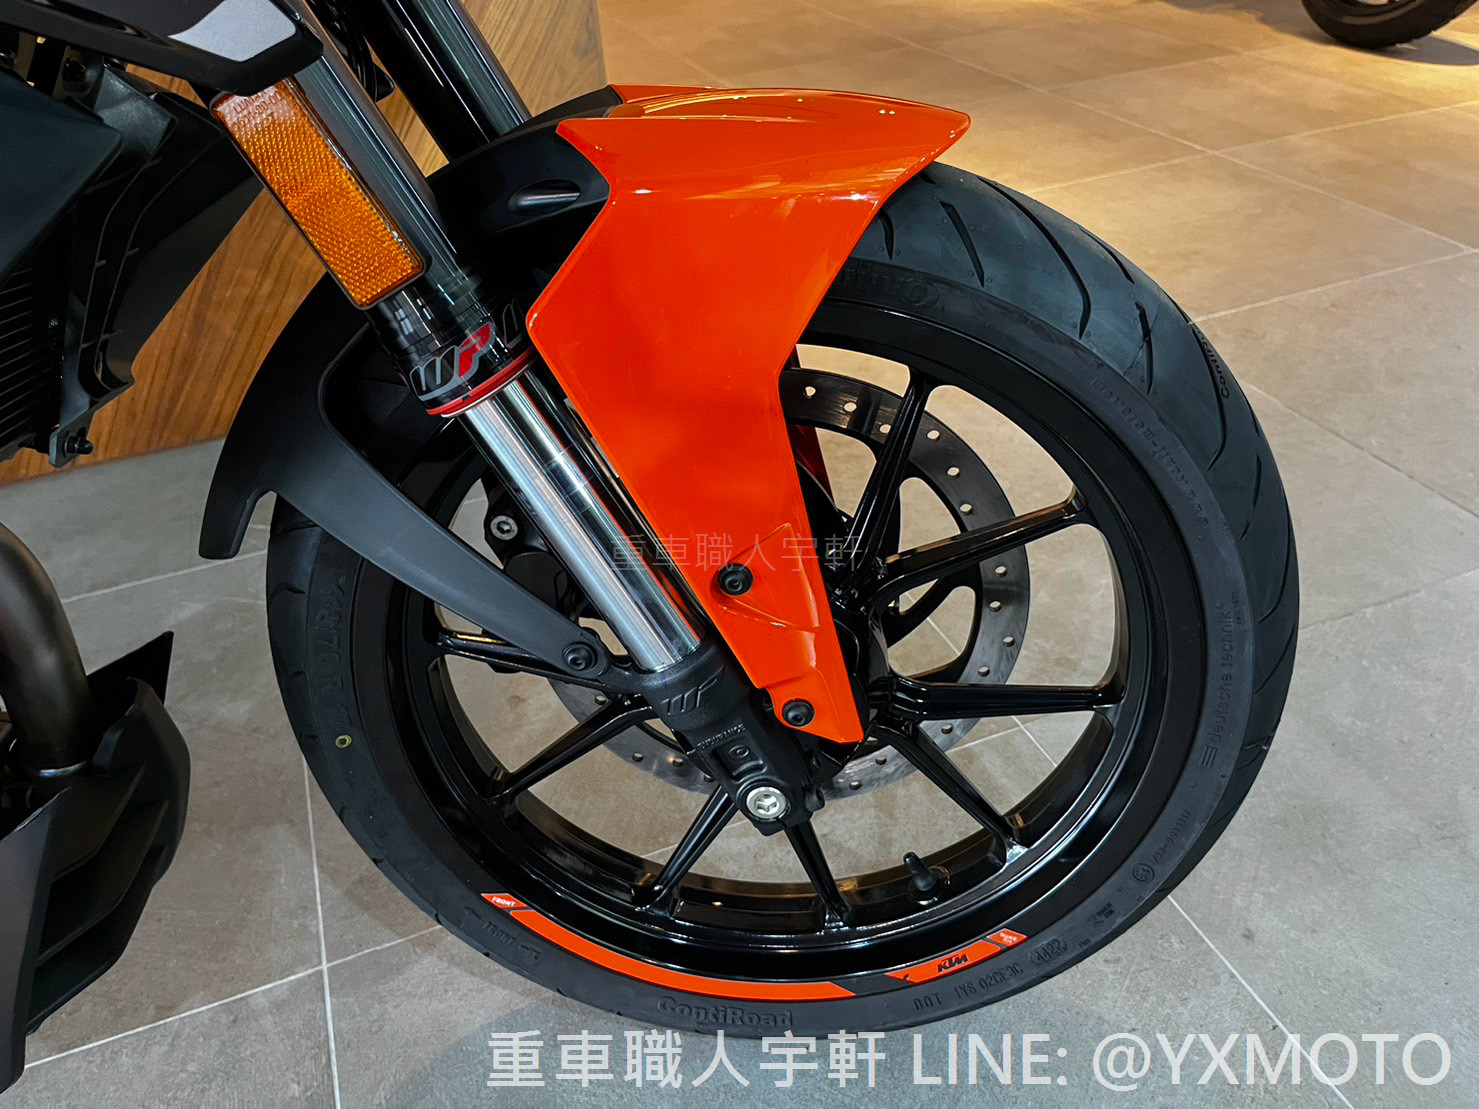 KTM 250DUKE新車出售中 【敏傑宇軒】KTM 250 DUKE 黑橘 總代理公司車 | 重車銷售職人-宇軒 (敏傑)